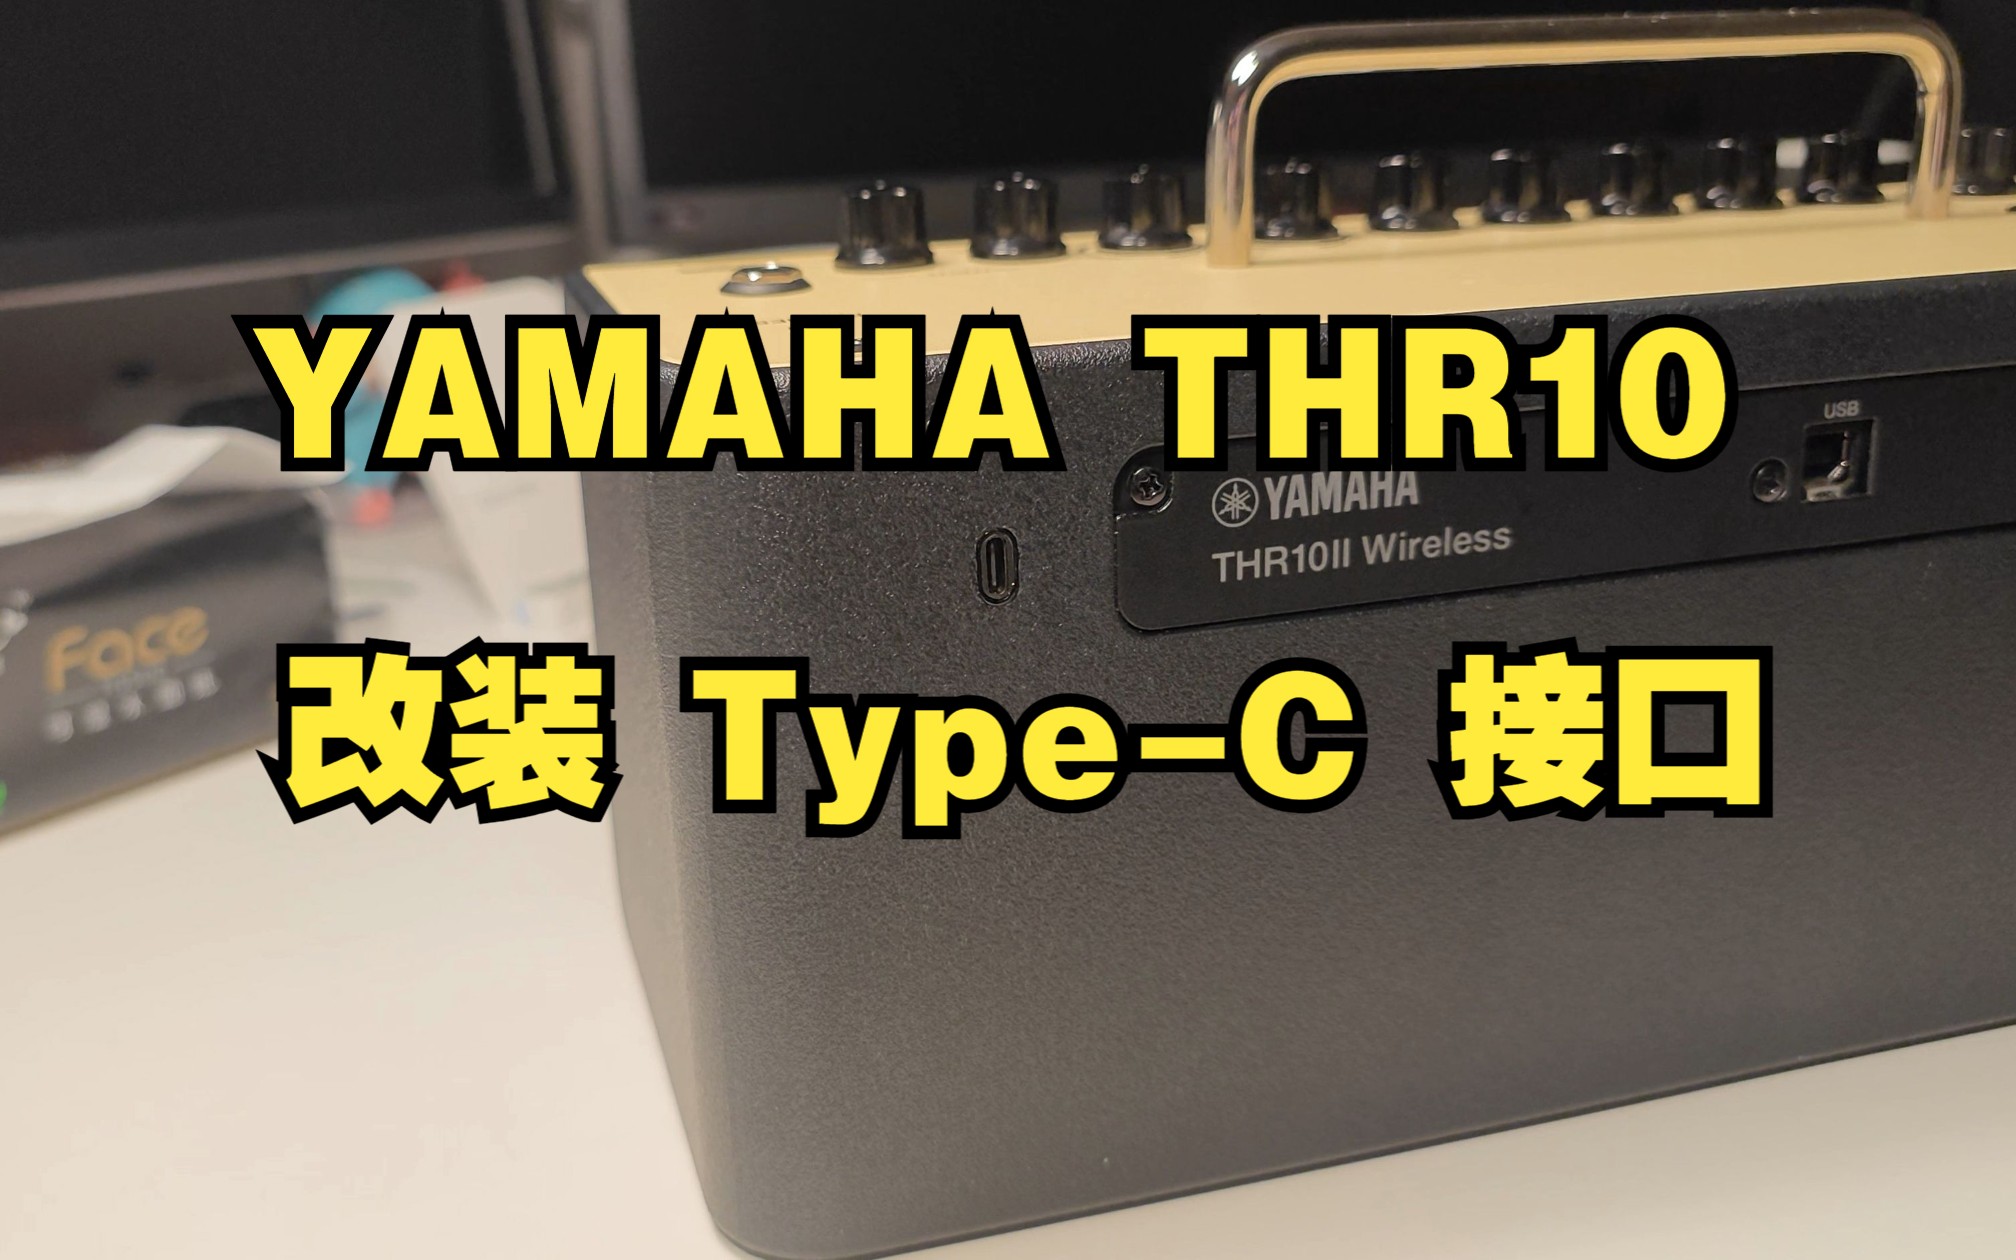 雅马哈 THR 音箱改装加装 Type-C 接口，使用手机充电器供电，告别大砖块电源